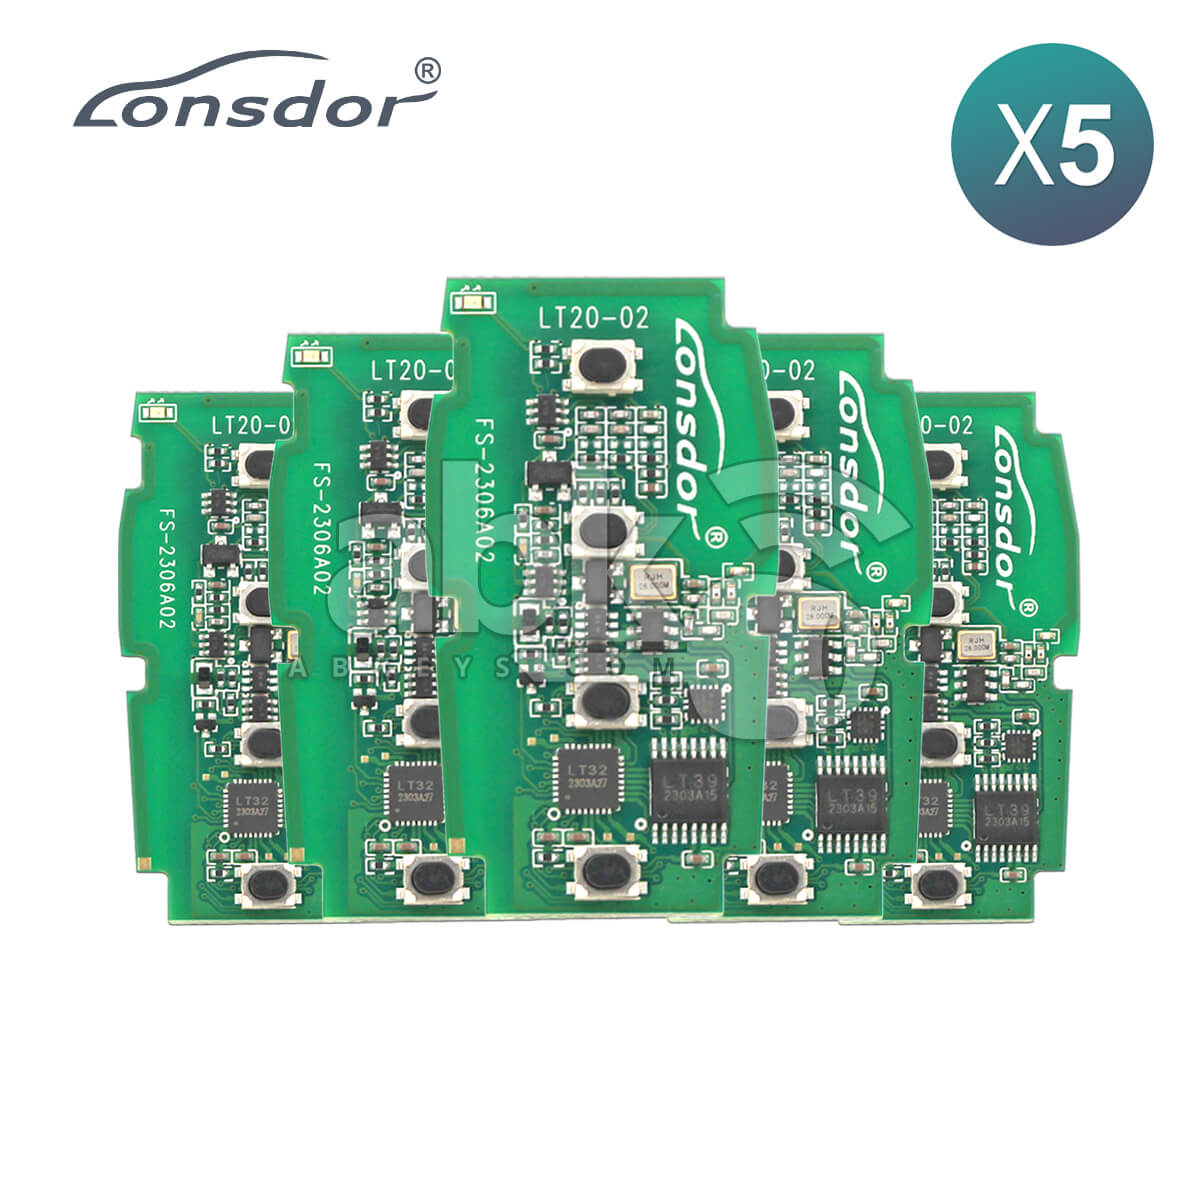 Lonsdor LT20-02 Smart Key PCB 8A+4D For Subaru Adjustable Frequency 4Buttons 5Pcs Bundle -